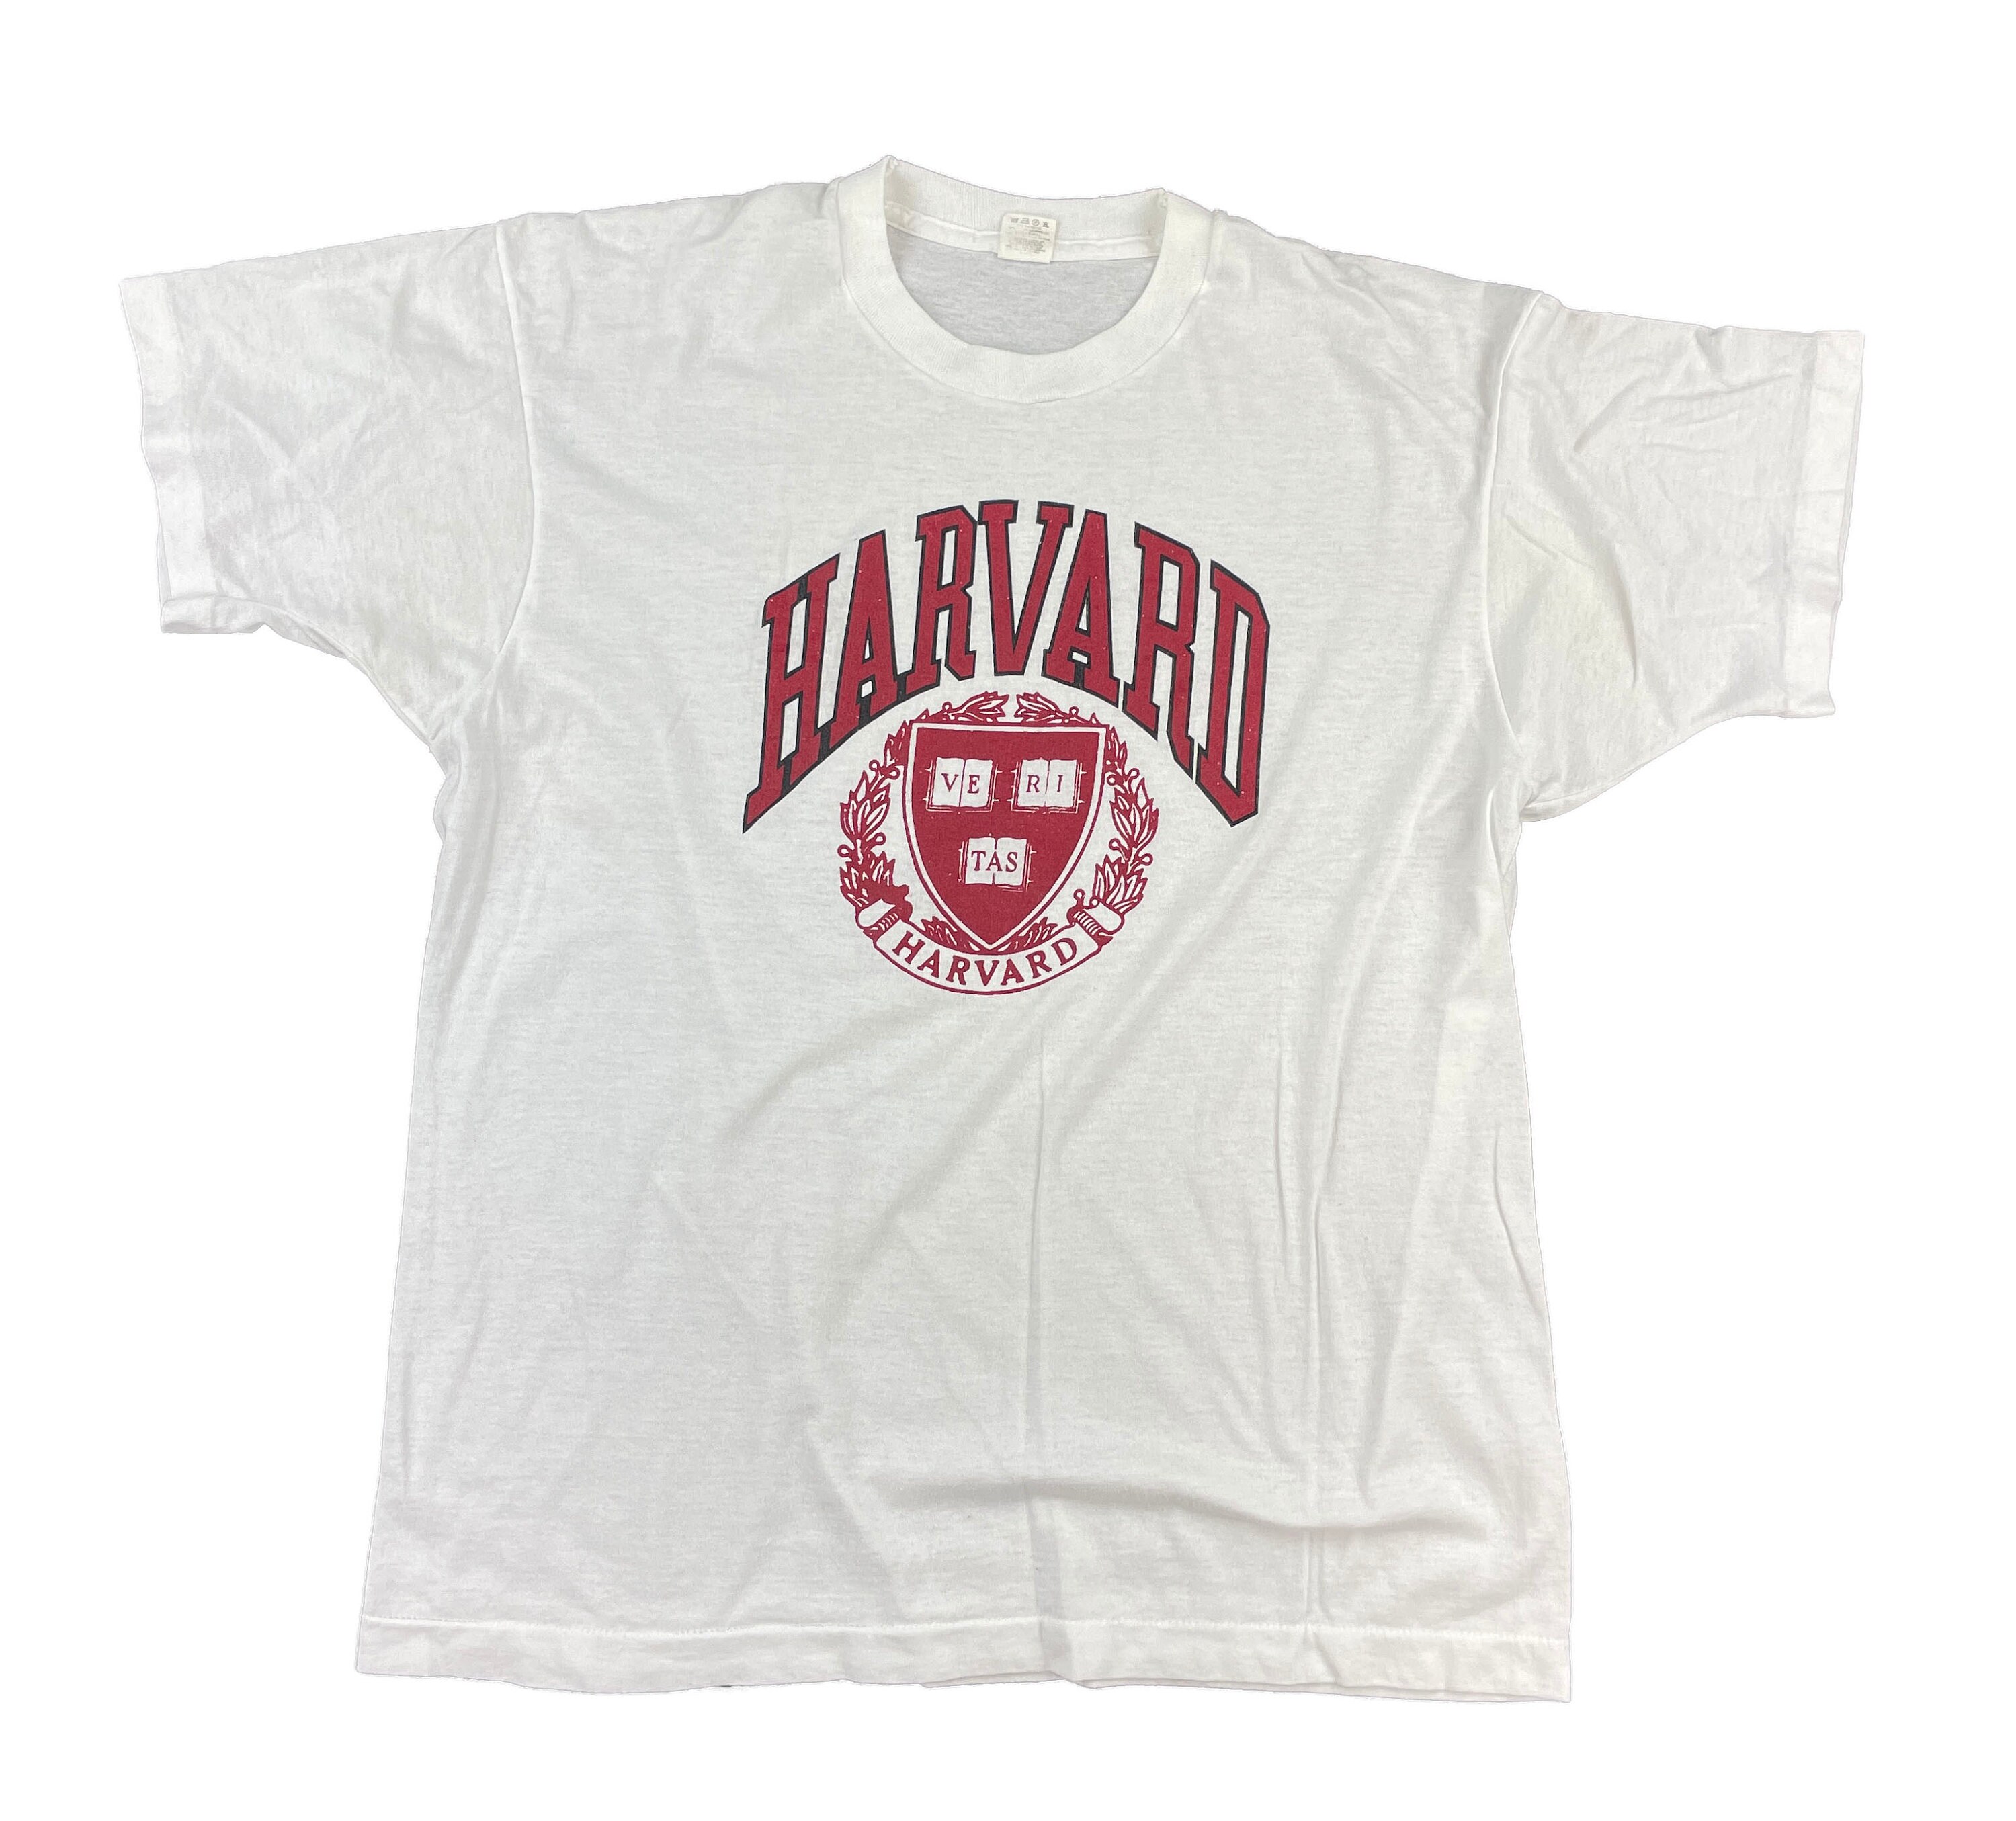 Kleding Jongenskleding Tops & T-shirts T-shirts T-shirts met print Vintage Jeugd Harvard T-shirt 